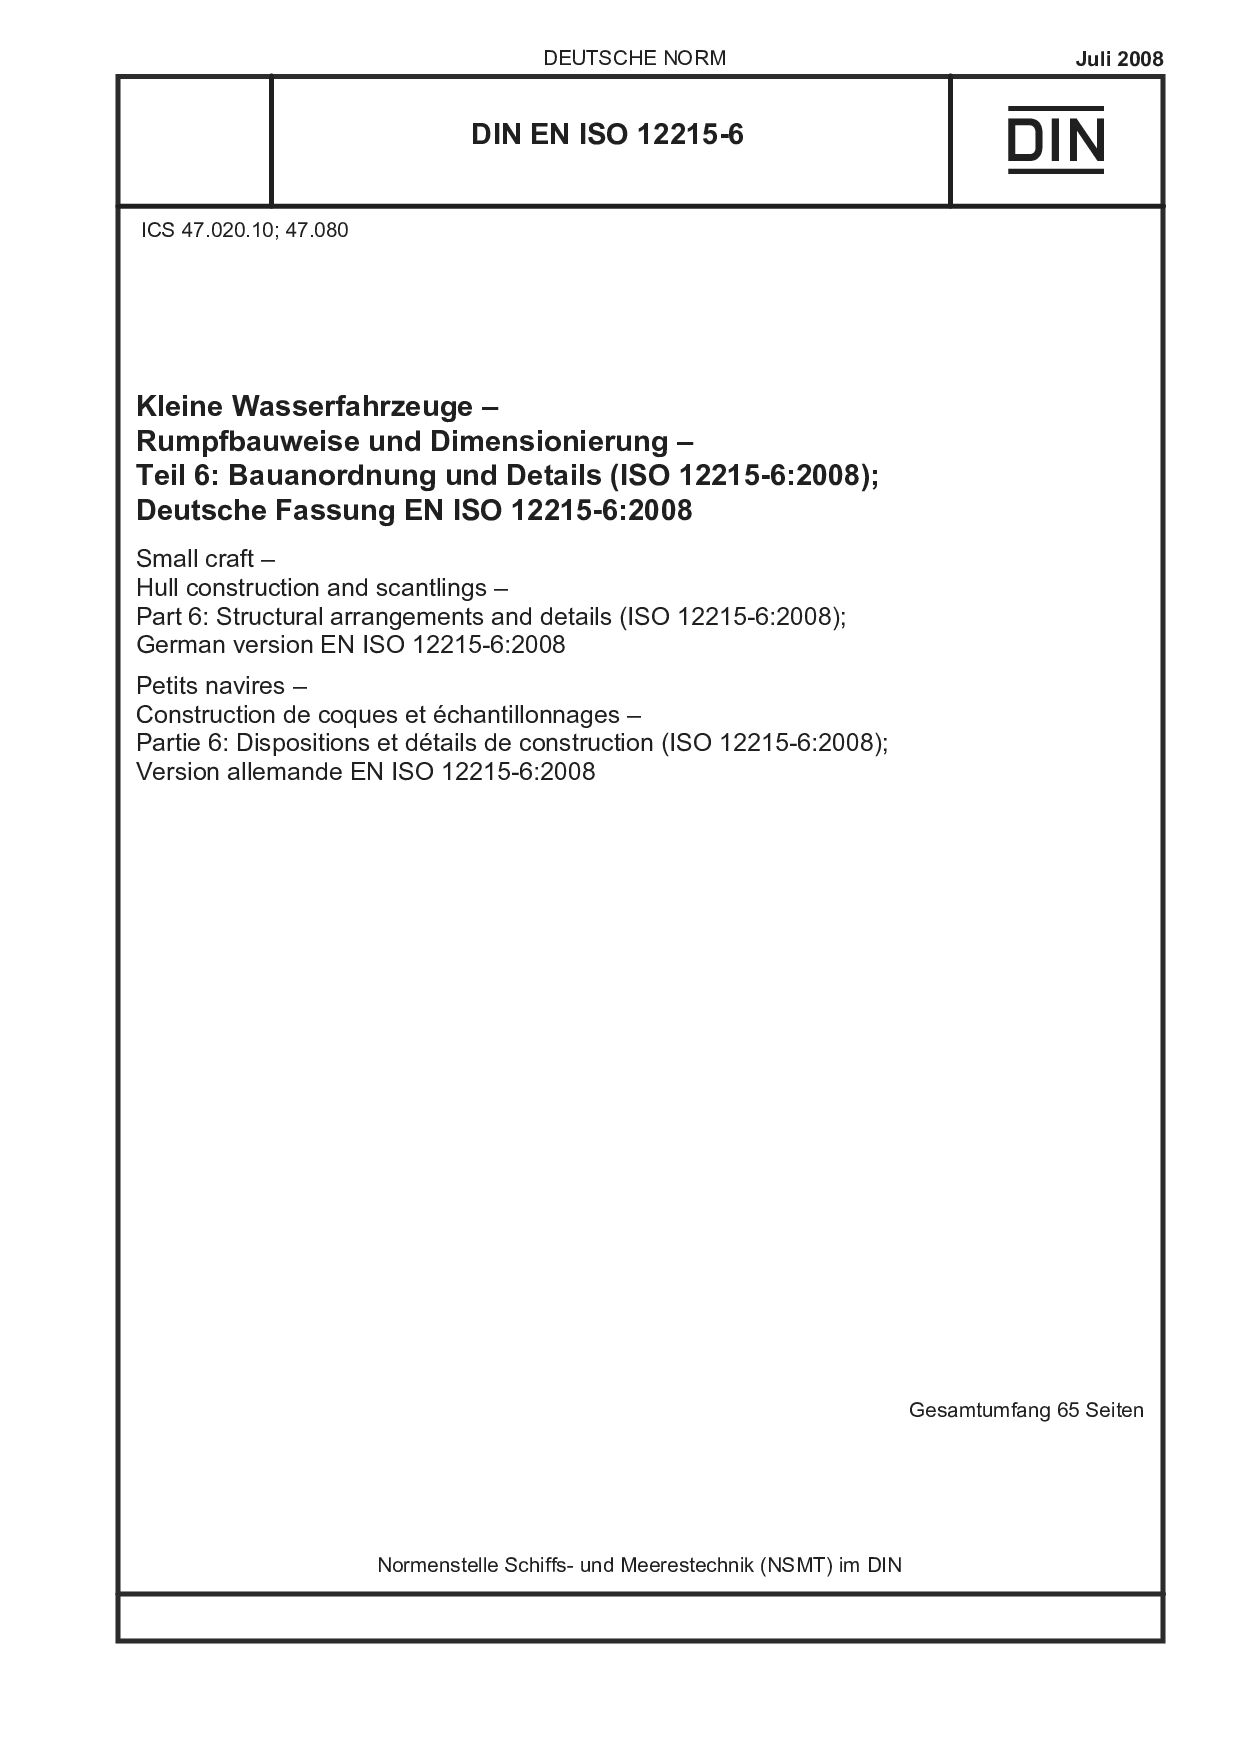 DIN EN ISO 12215-6:2008